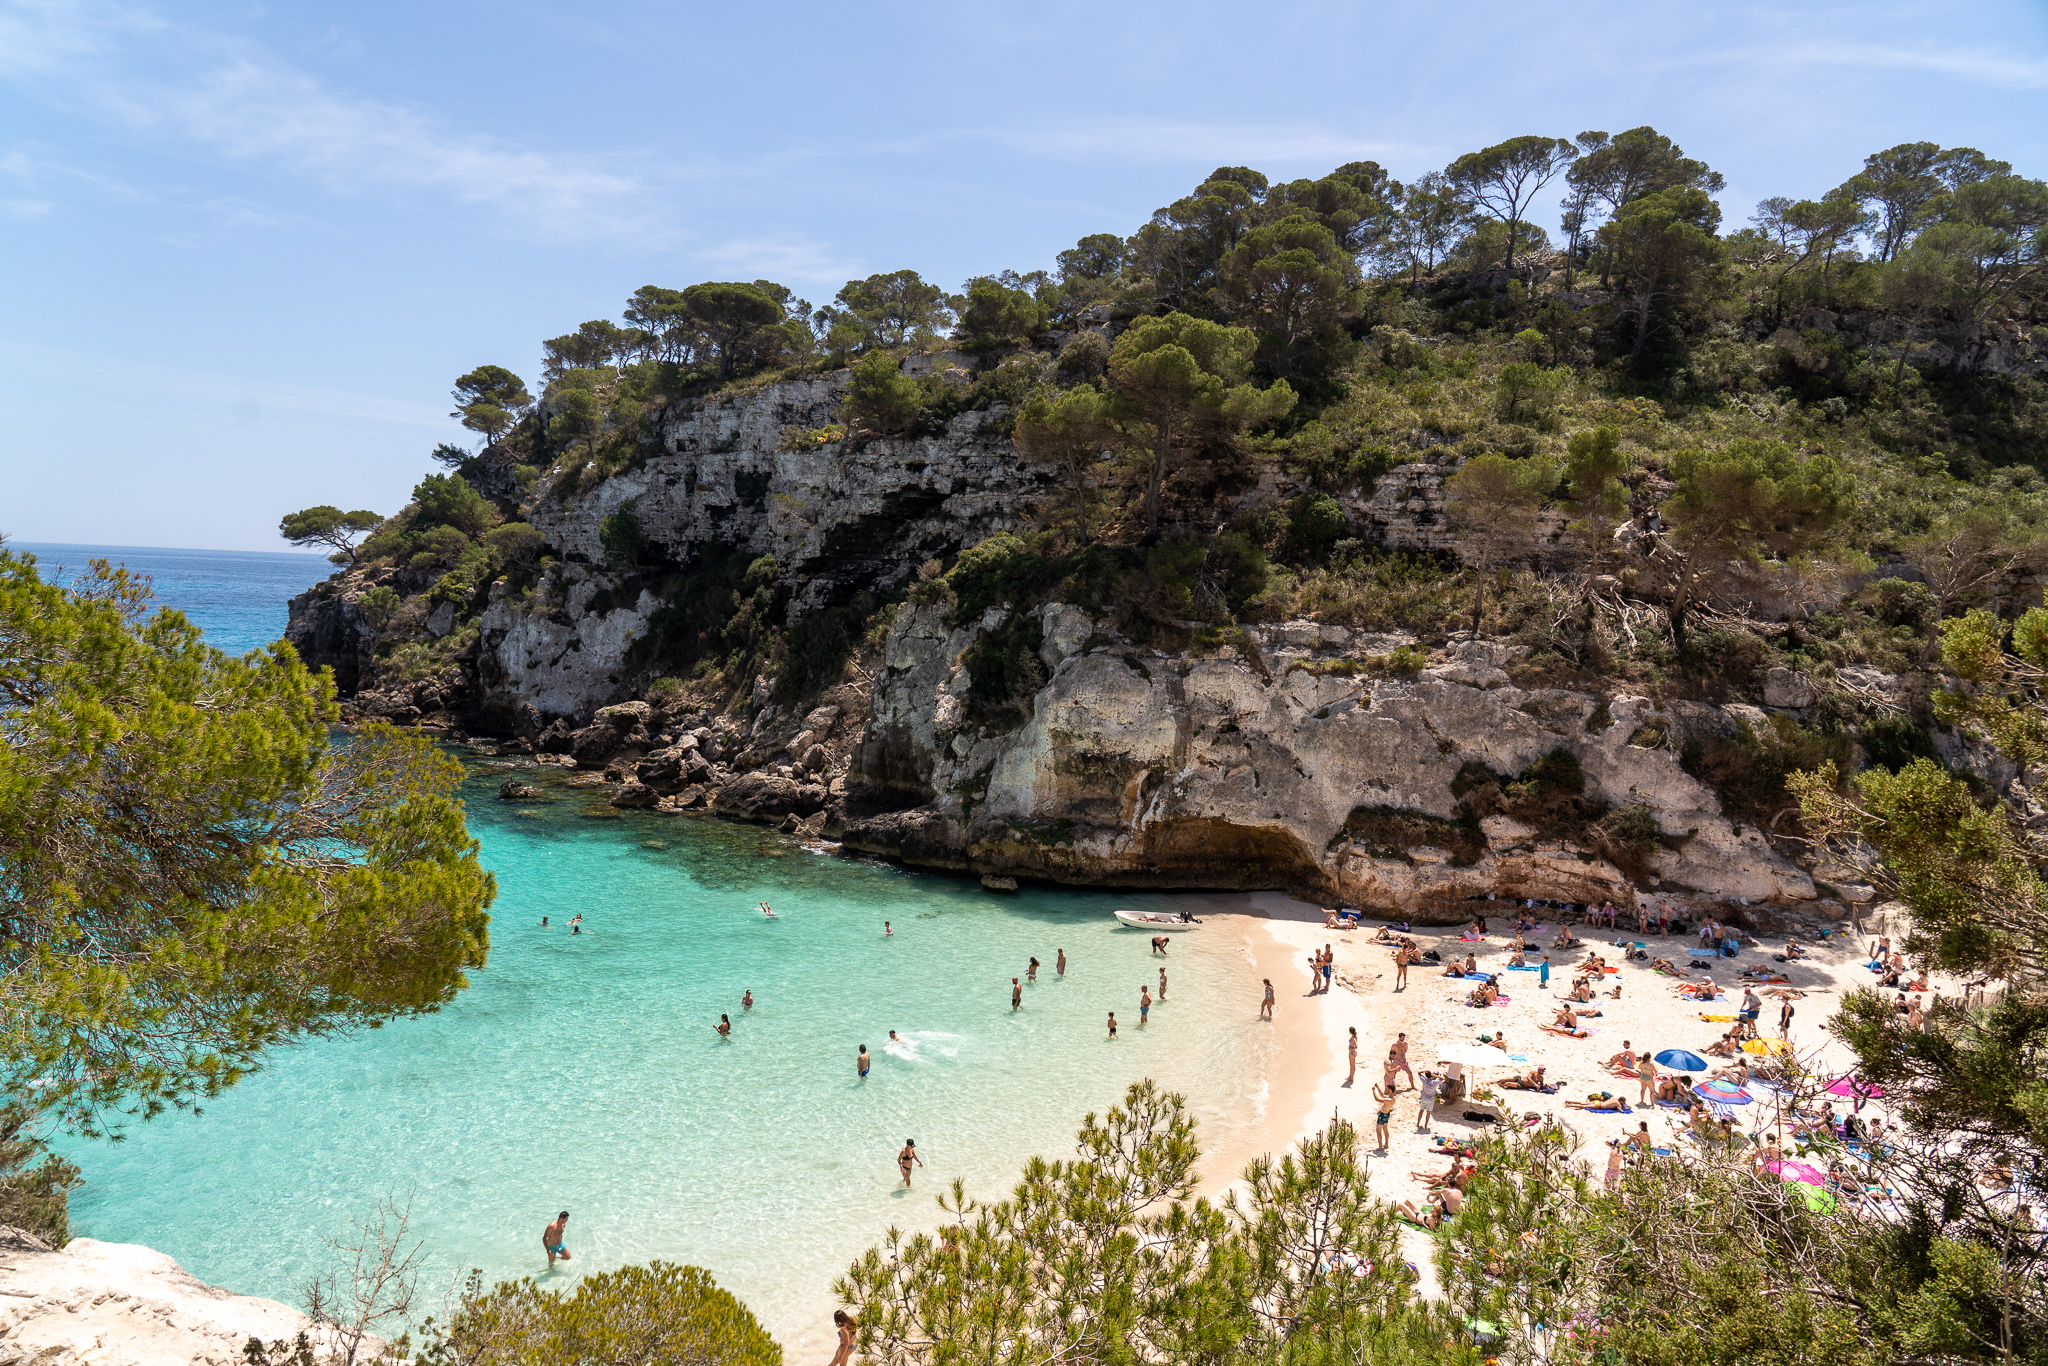 How to Visit Cala Macarella and Cala Macarelleta in Menorca